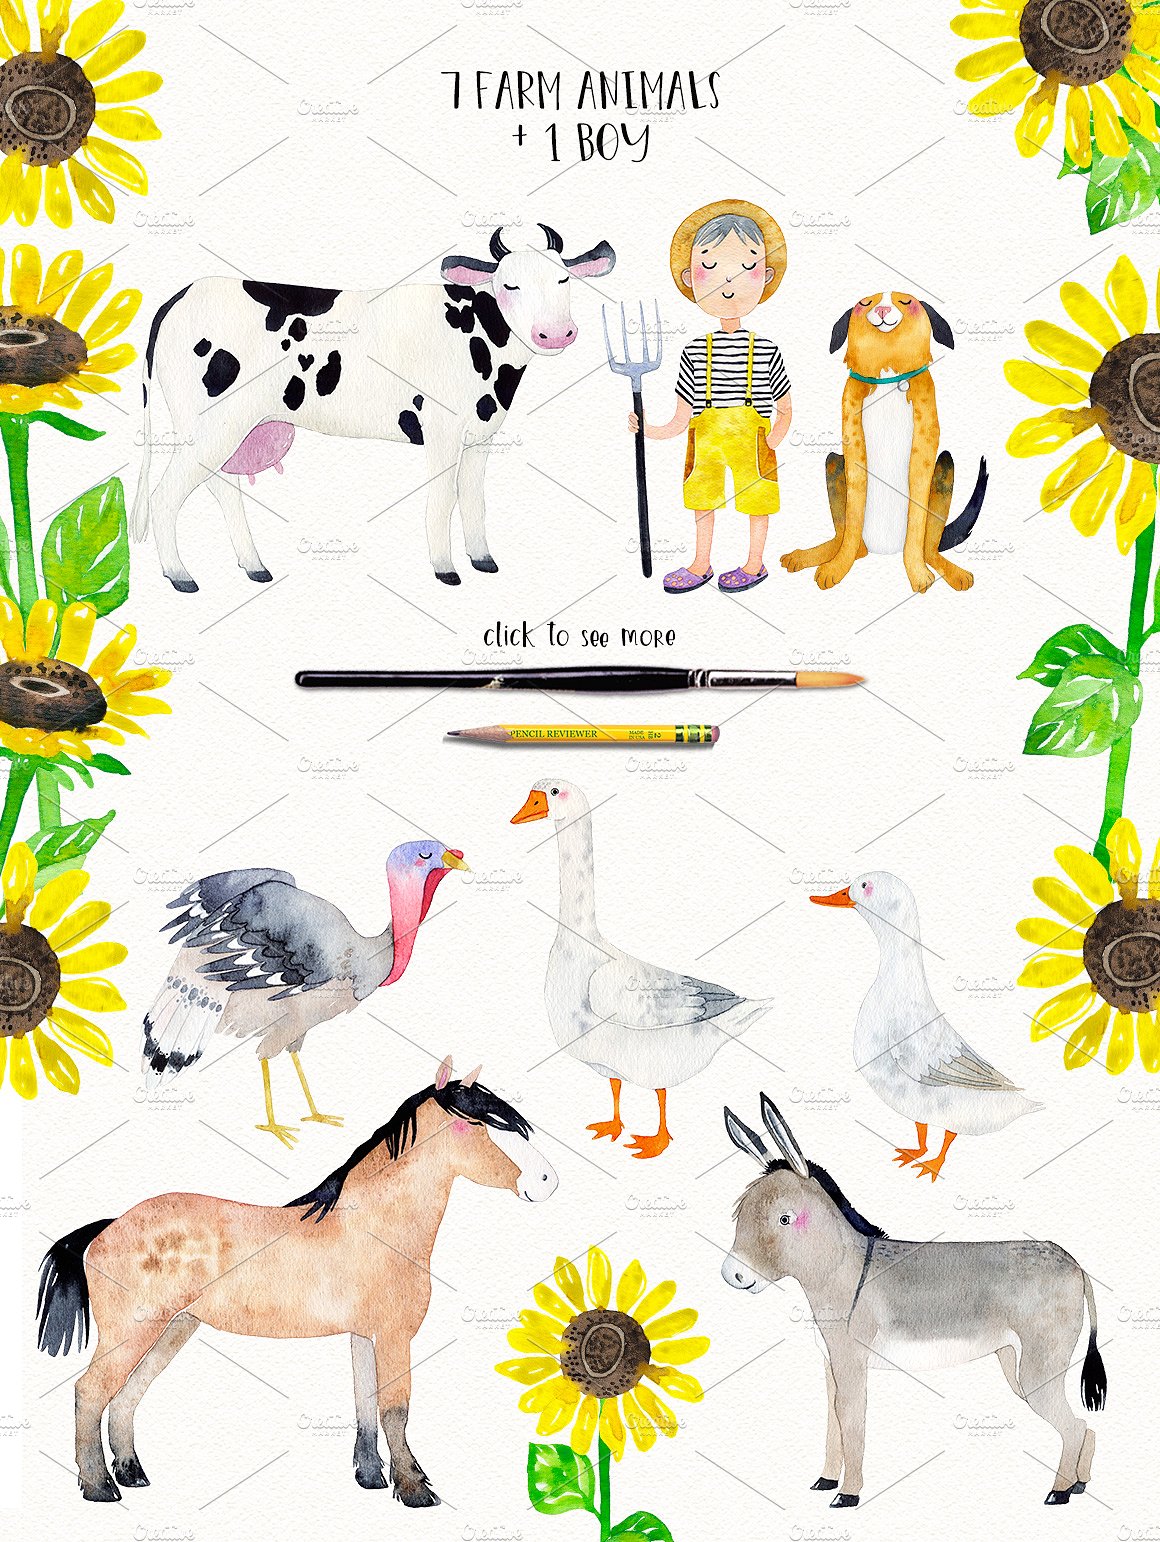 完美的手绘农场动物背景人物水彩画集 FARM ANIMALS WATERCOLOR SET插图6